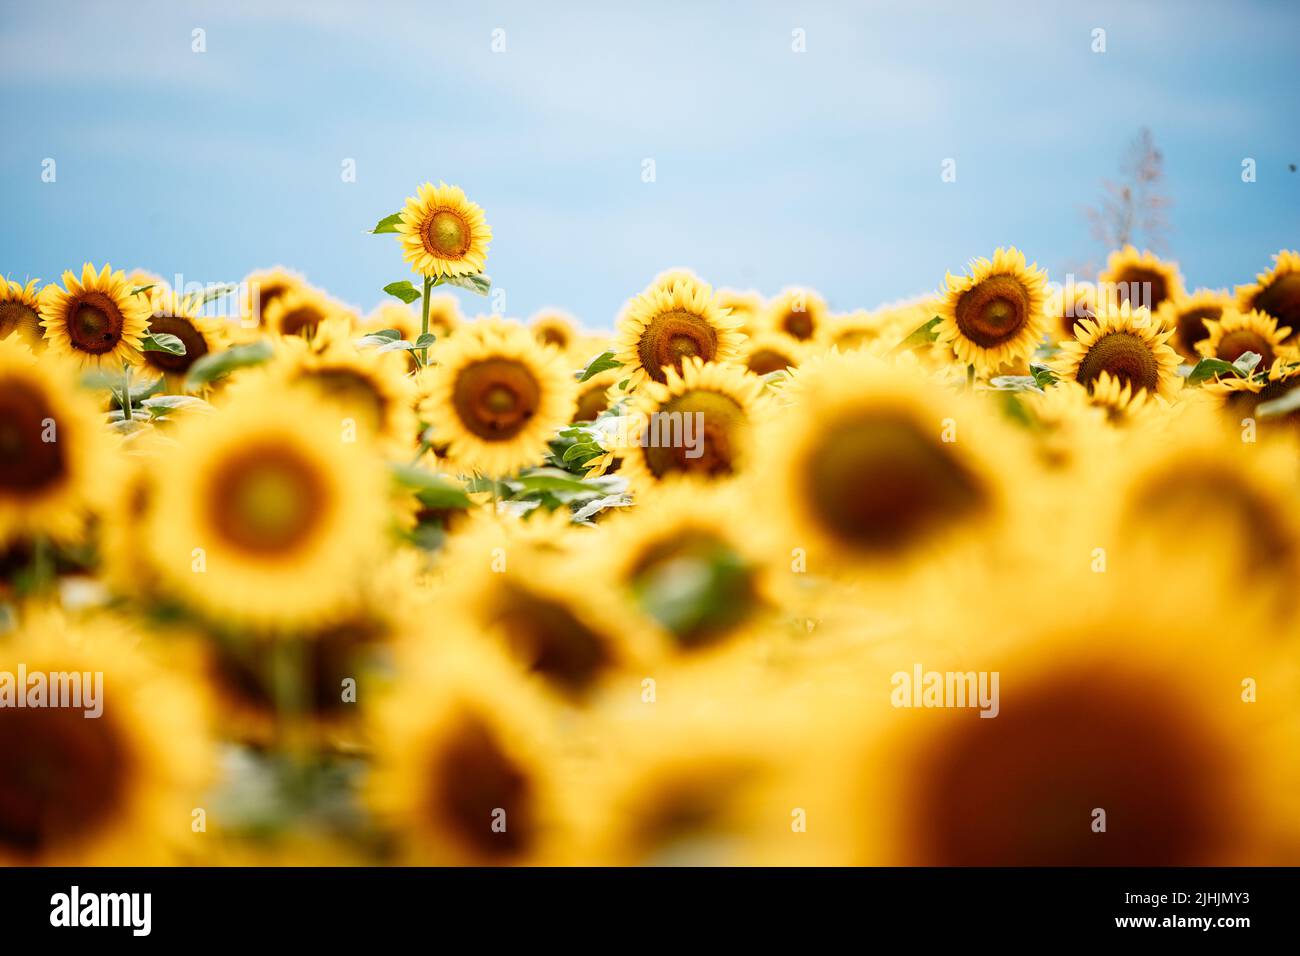 Sich vom Crowd-Konzept abheben. Wunderbarer Panoramablick auf das Sonnenblumenfeld im Sommer. Eine Blume wächst größer als die anderen. Stockfoto